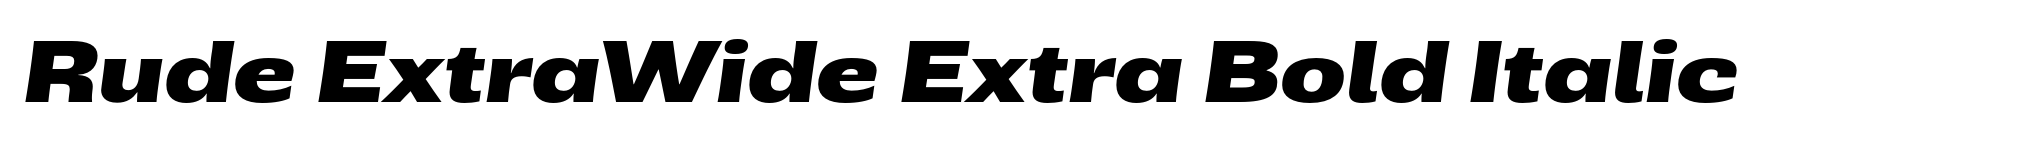 Rude ExtraWide Extra Bold Italic image